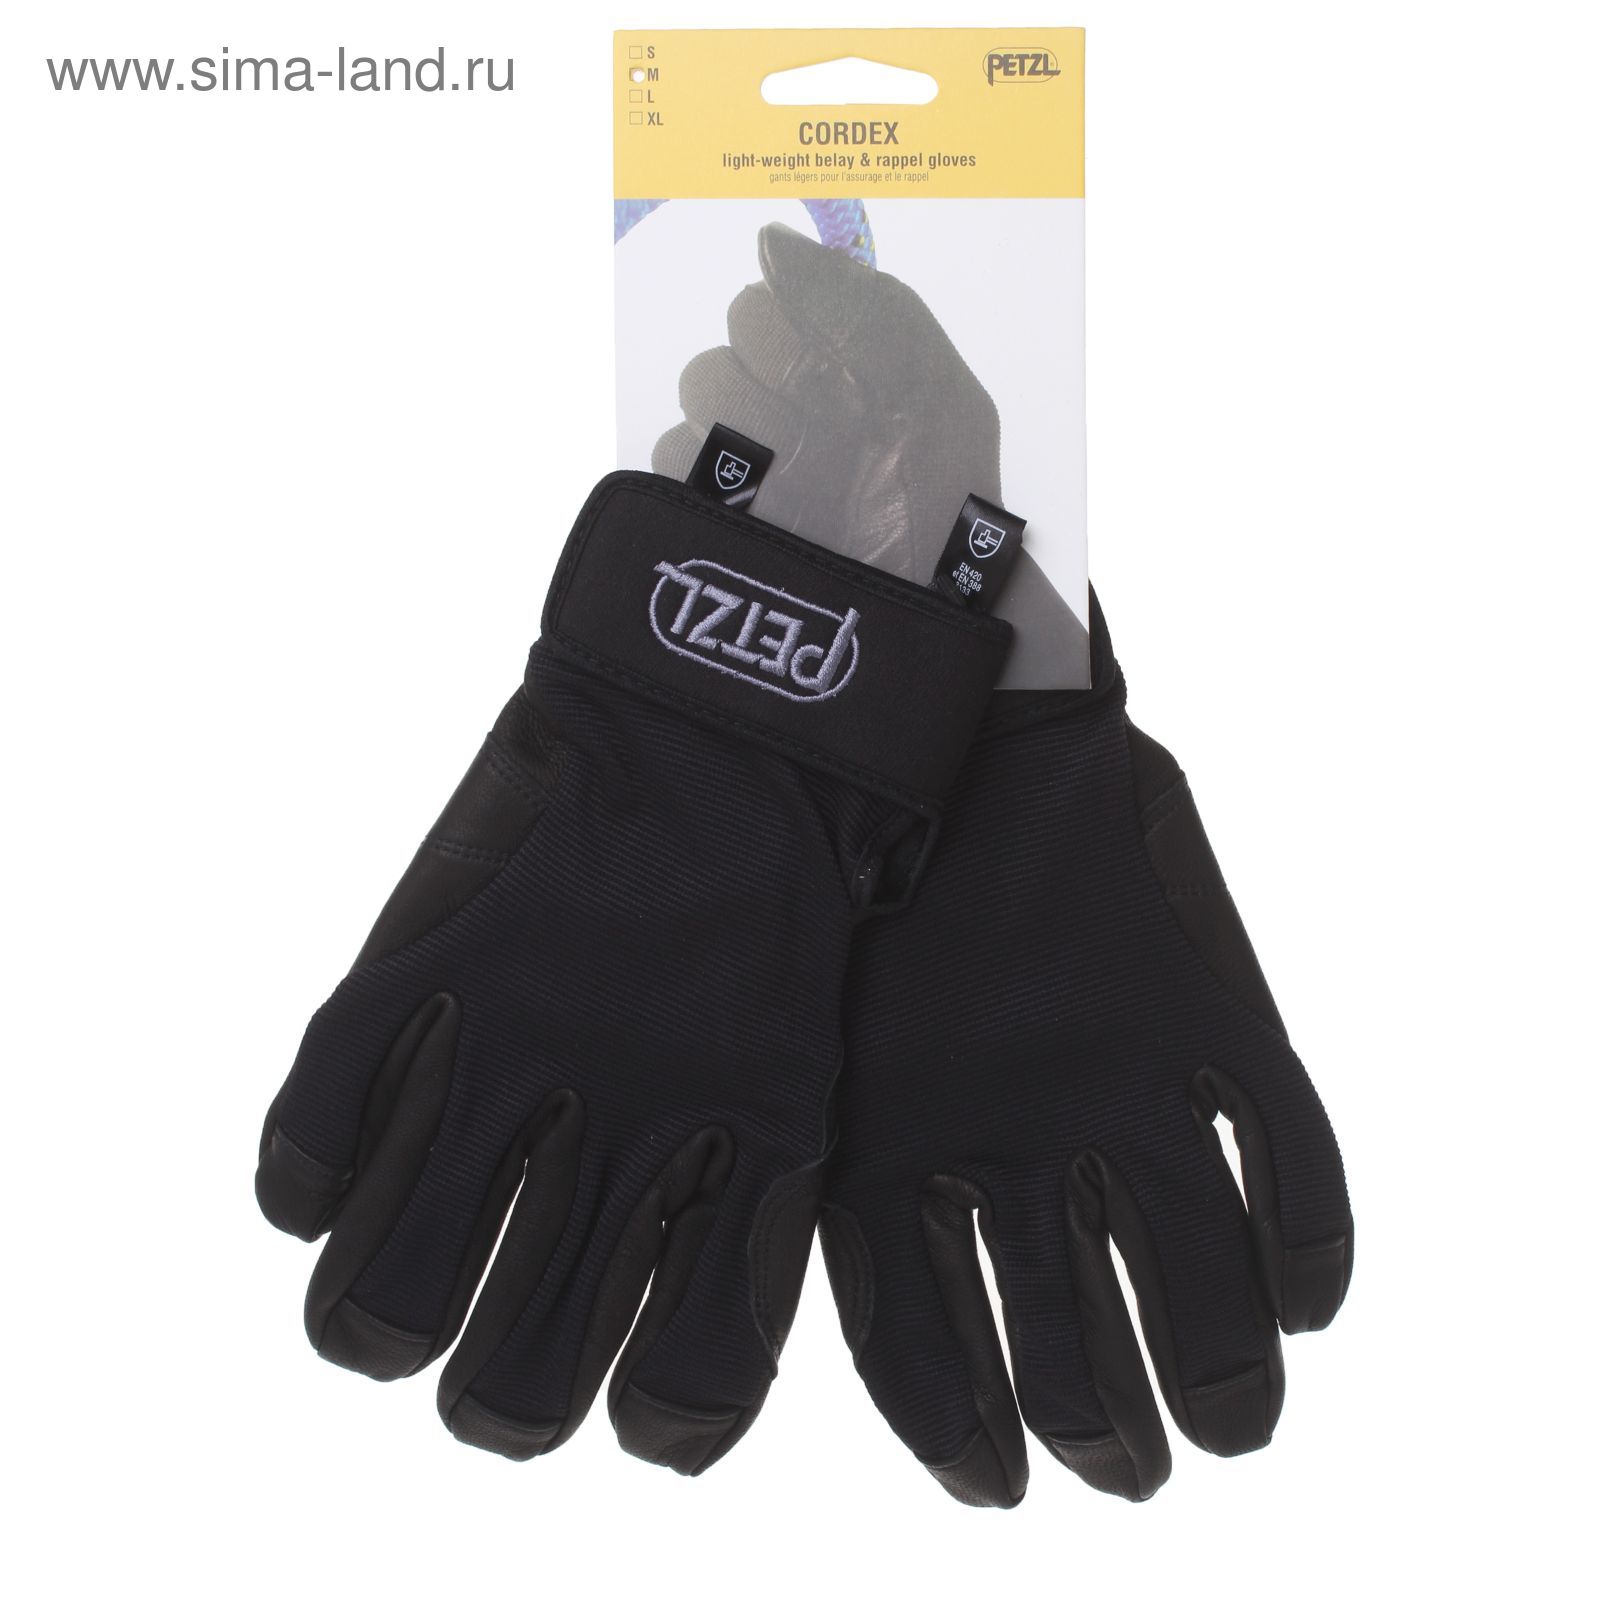 Перчатки Petzl CORDEX, цвет черный, размер М